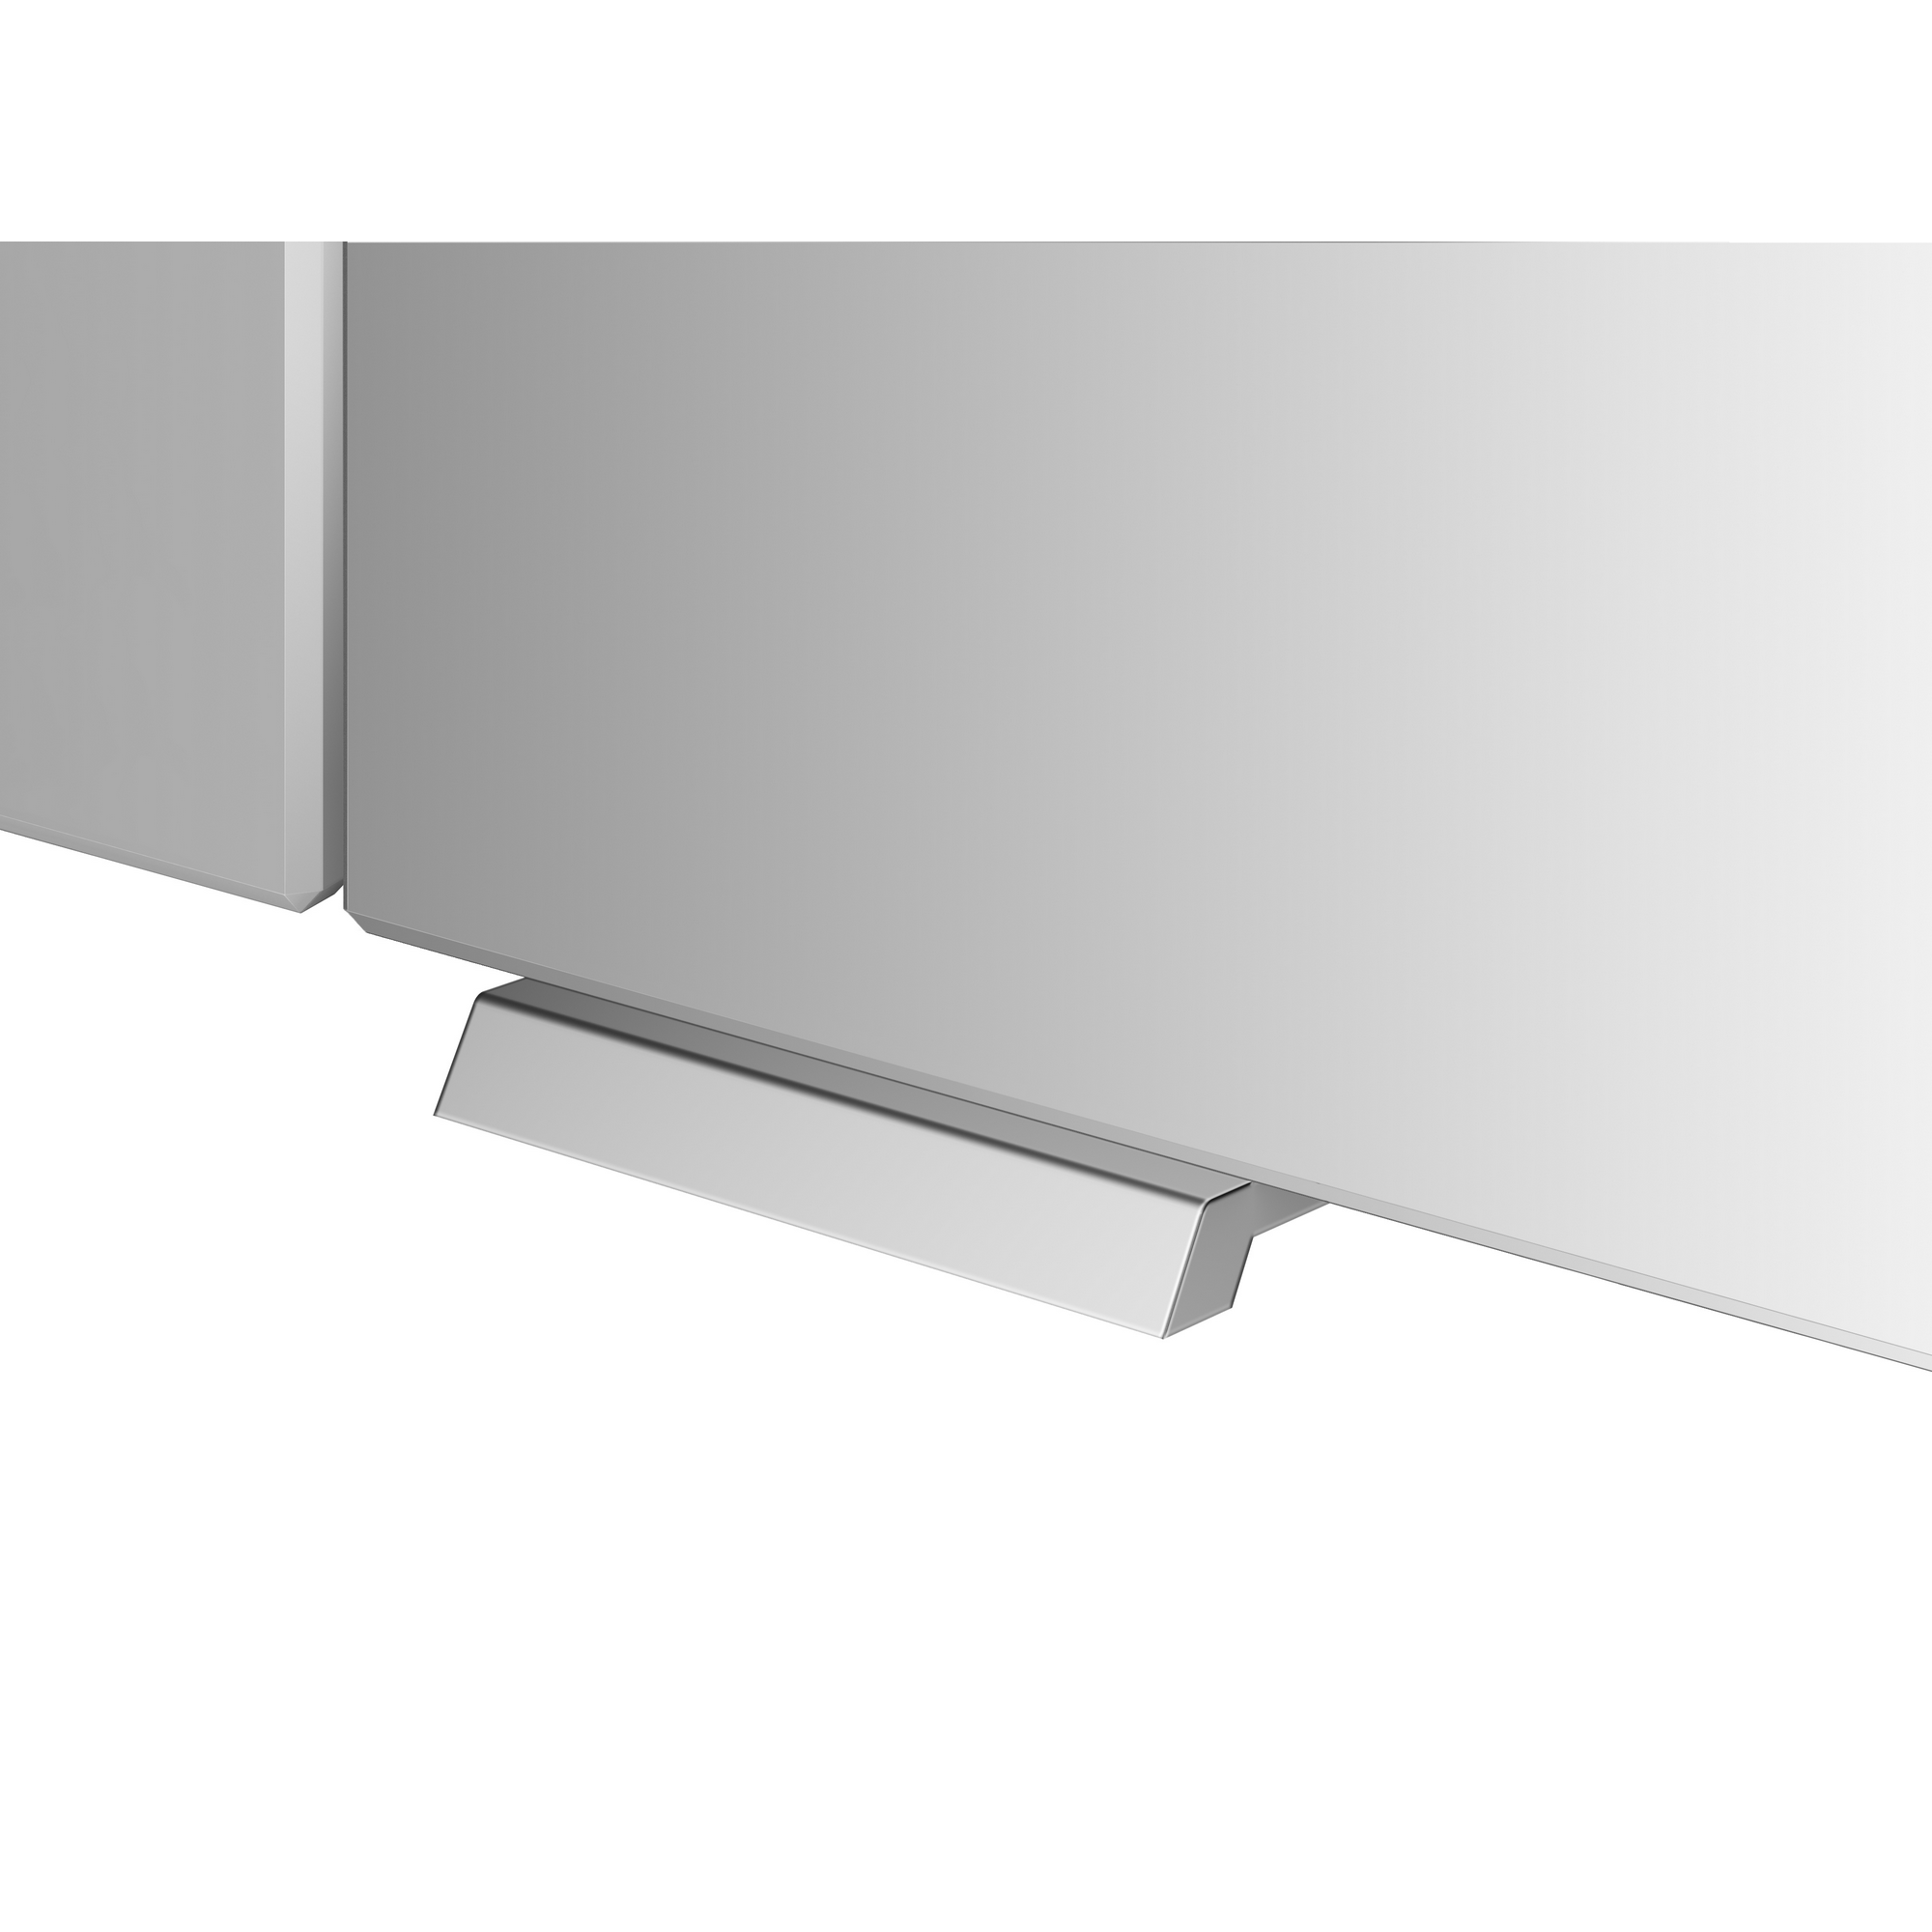 LED-Spiegelschrank 'KHX' anthrazit 90,4 x 74 x 14,2 cm + product picture